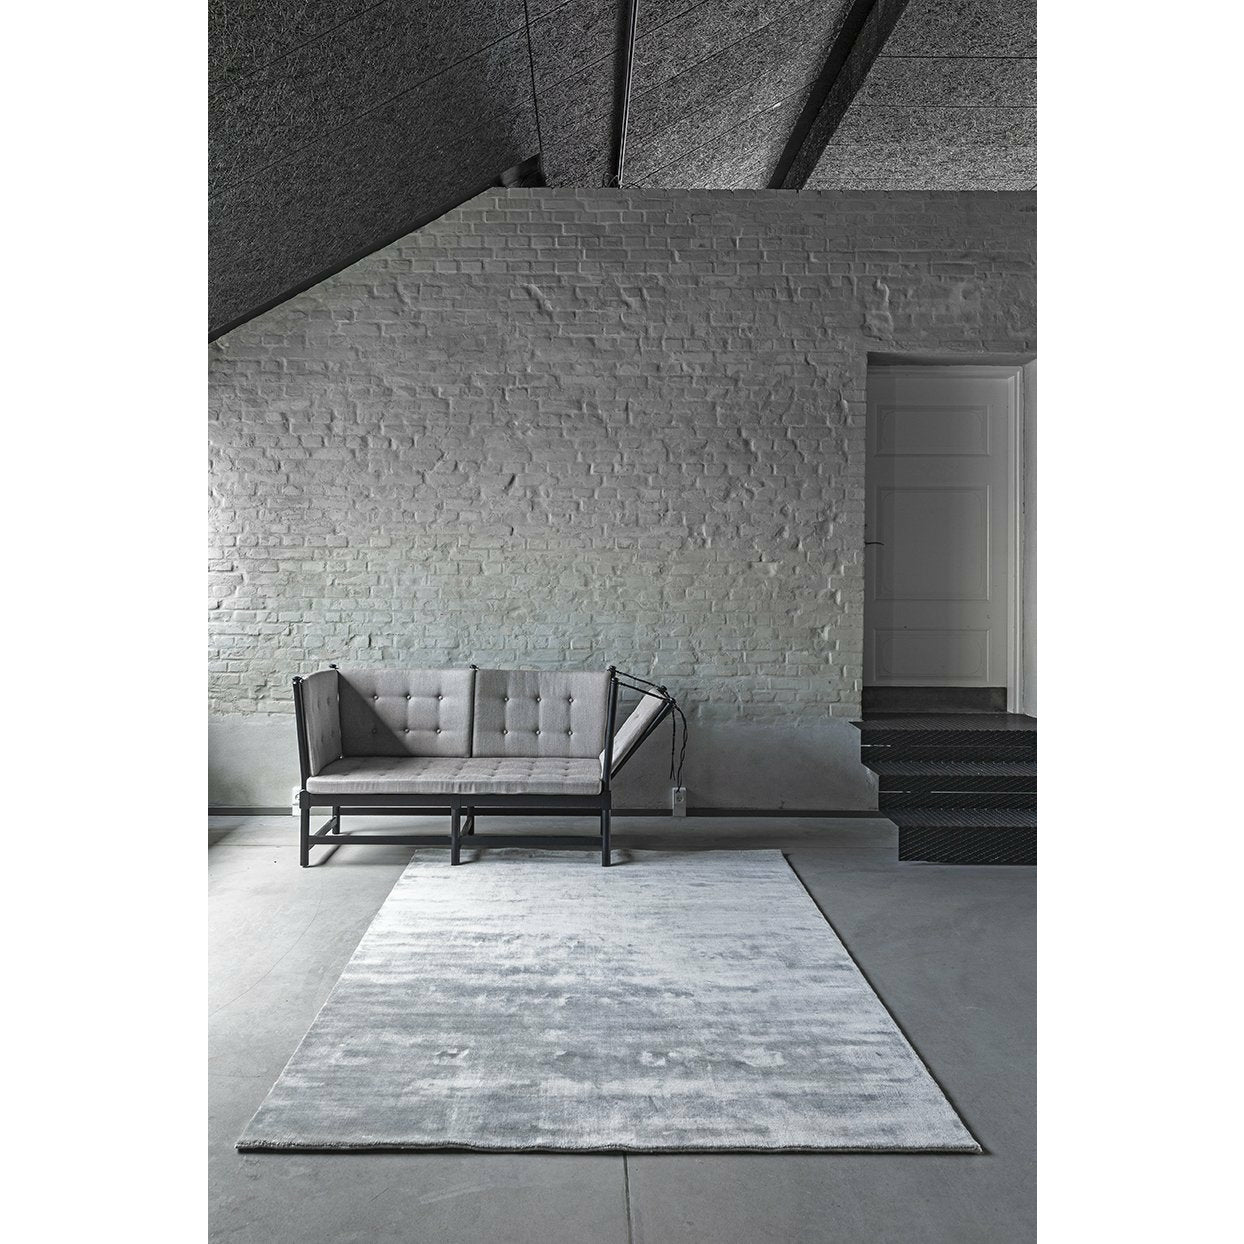 Massimo Earth Bamboo Teppich Concrete Grey, Ø 240 cm-Teppcihe-Massimo-5710080127034-1001012703-MAS-inwohn